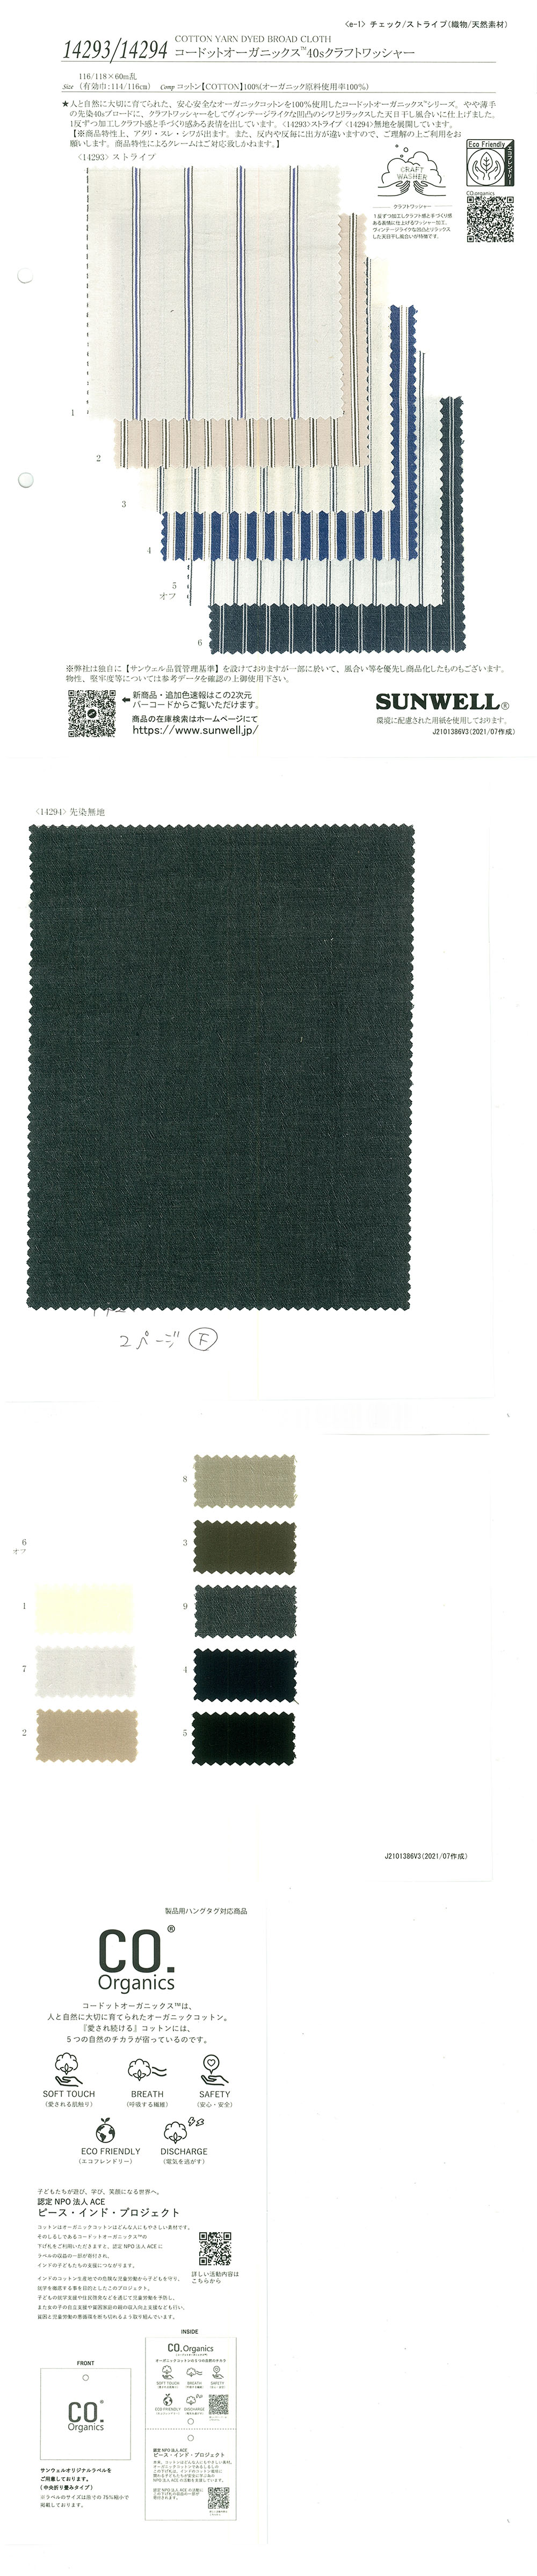 14294 Cordot Organics (R) 40 Traitement De La Rondelle Artisanale à Filetage Unique[Fabrication De Textile] SUNWELL